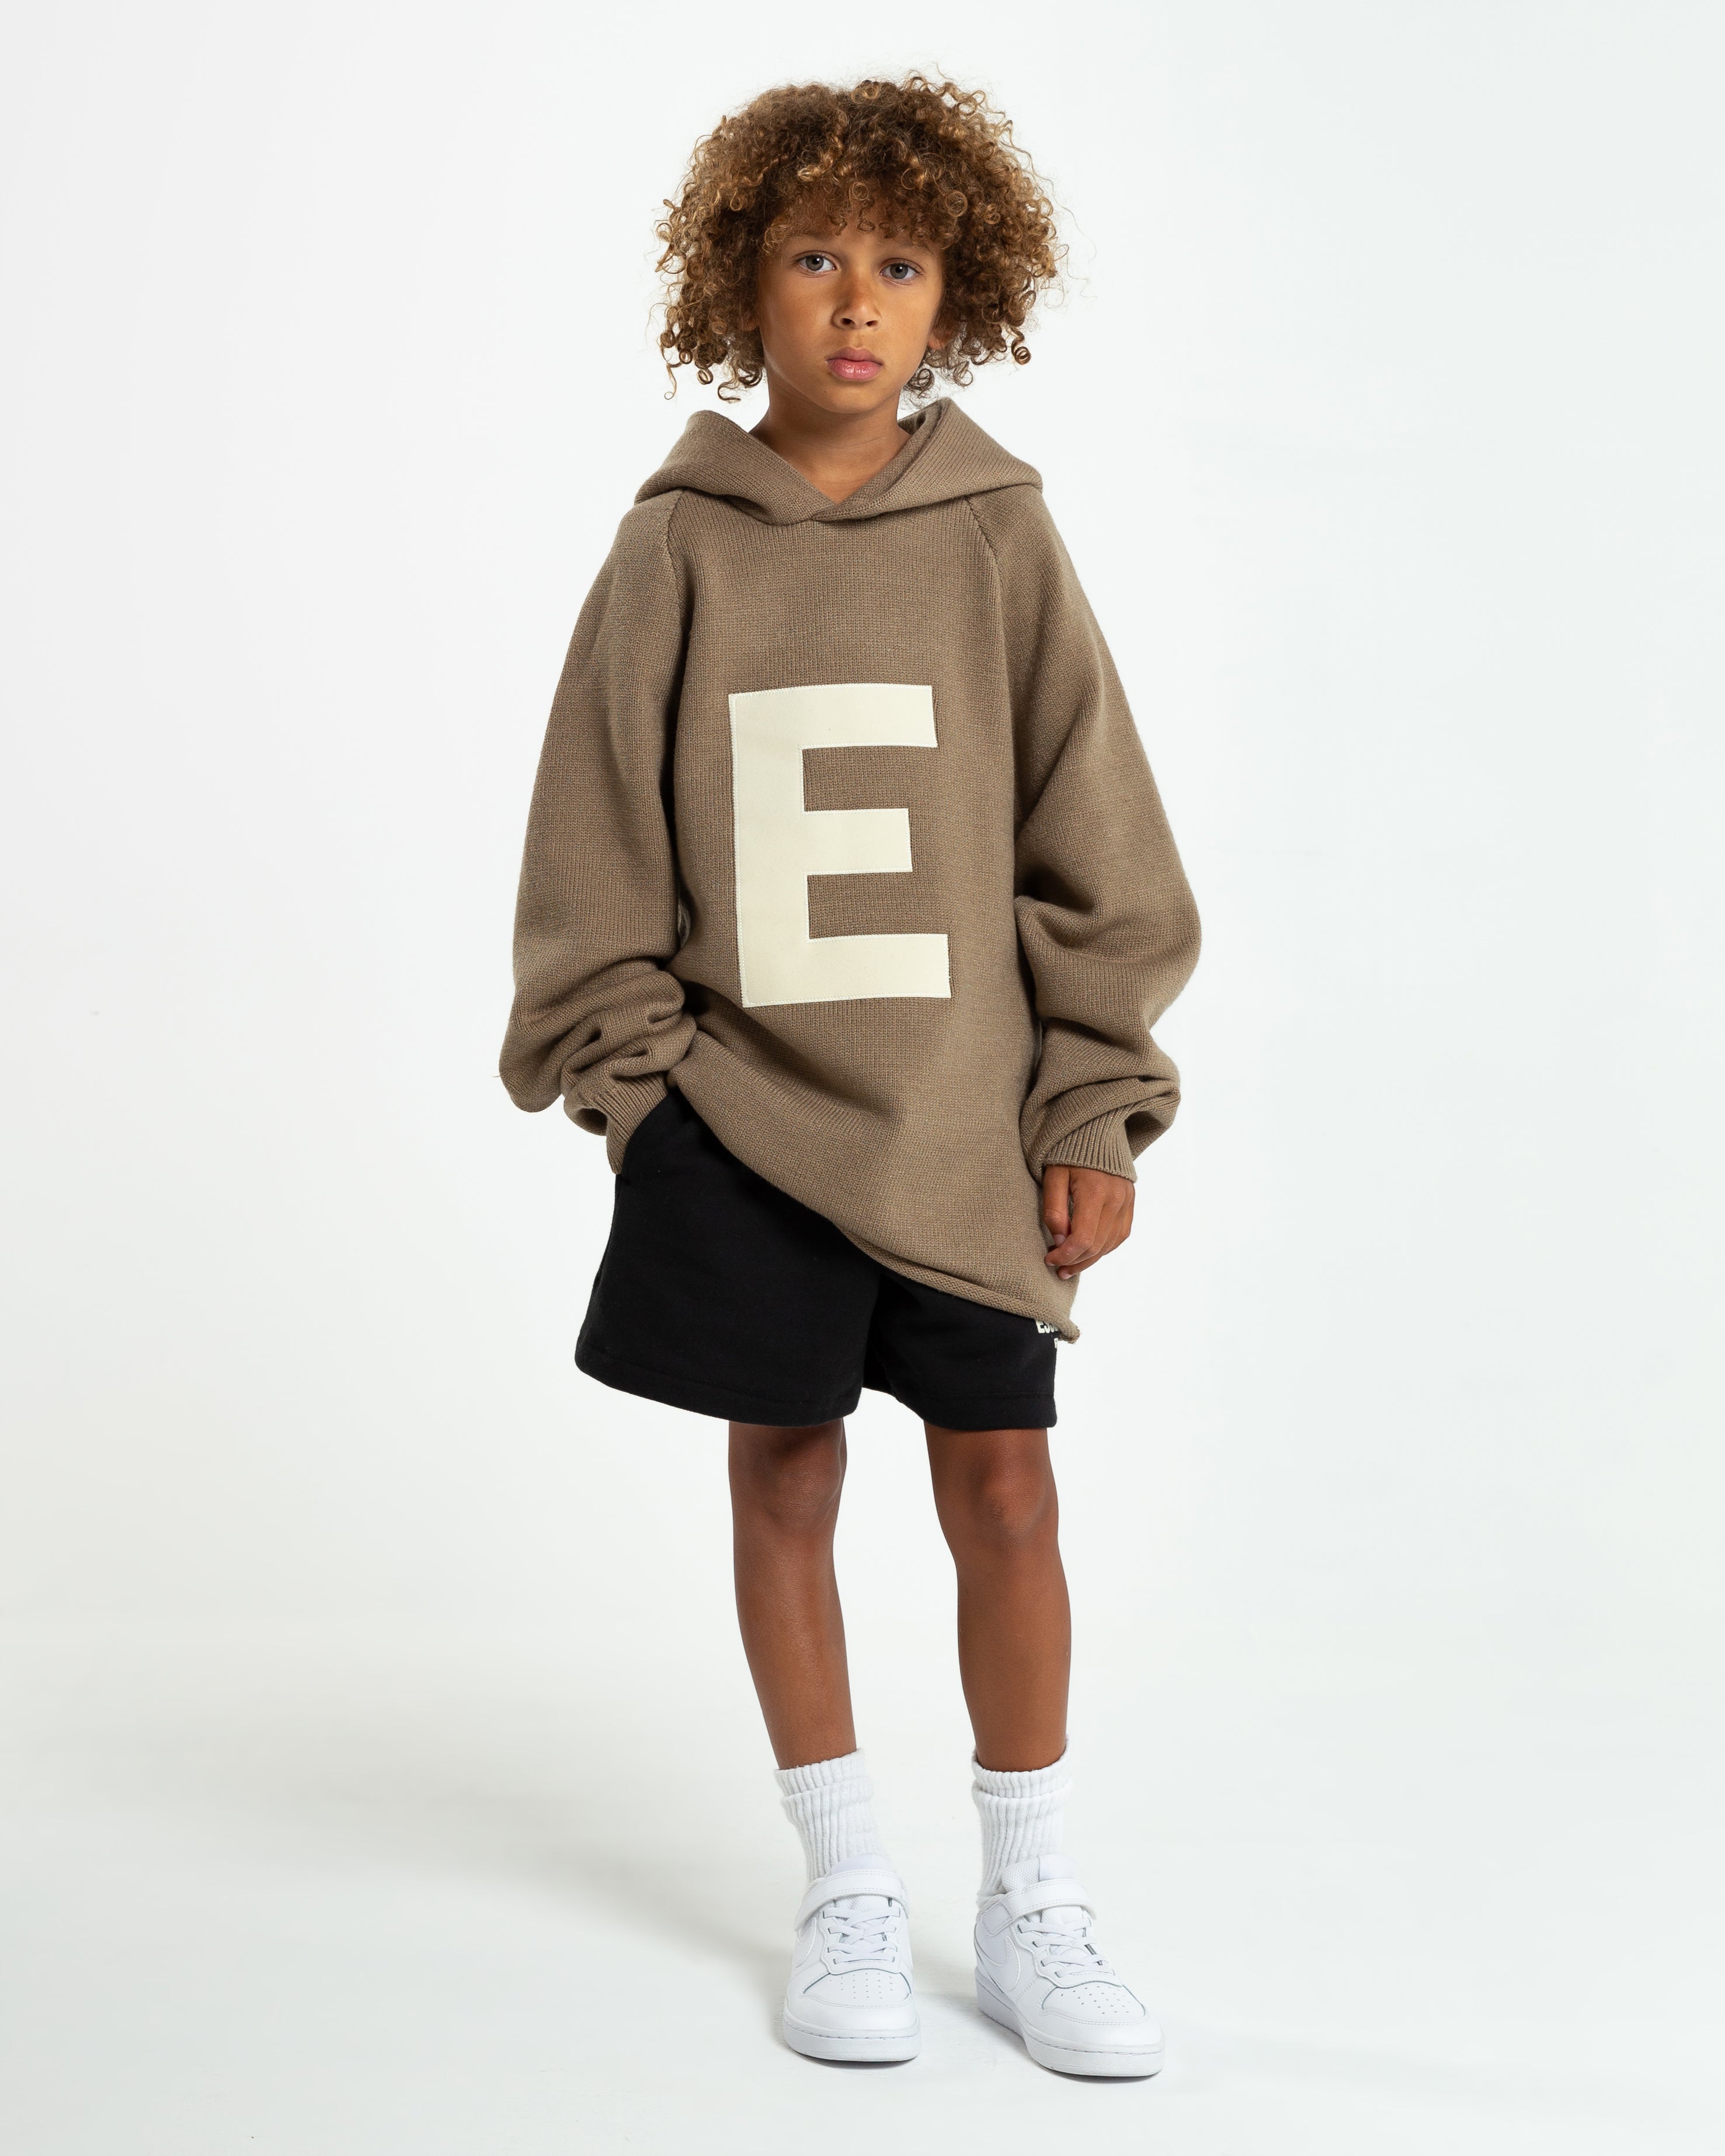 Kids Tan Fleece Sweatshirt by Fear of God ESSENTIALS on Sale